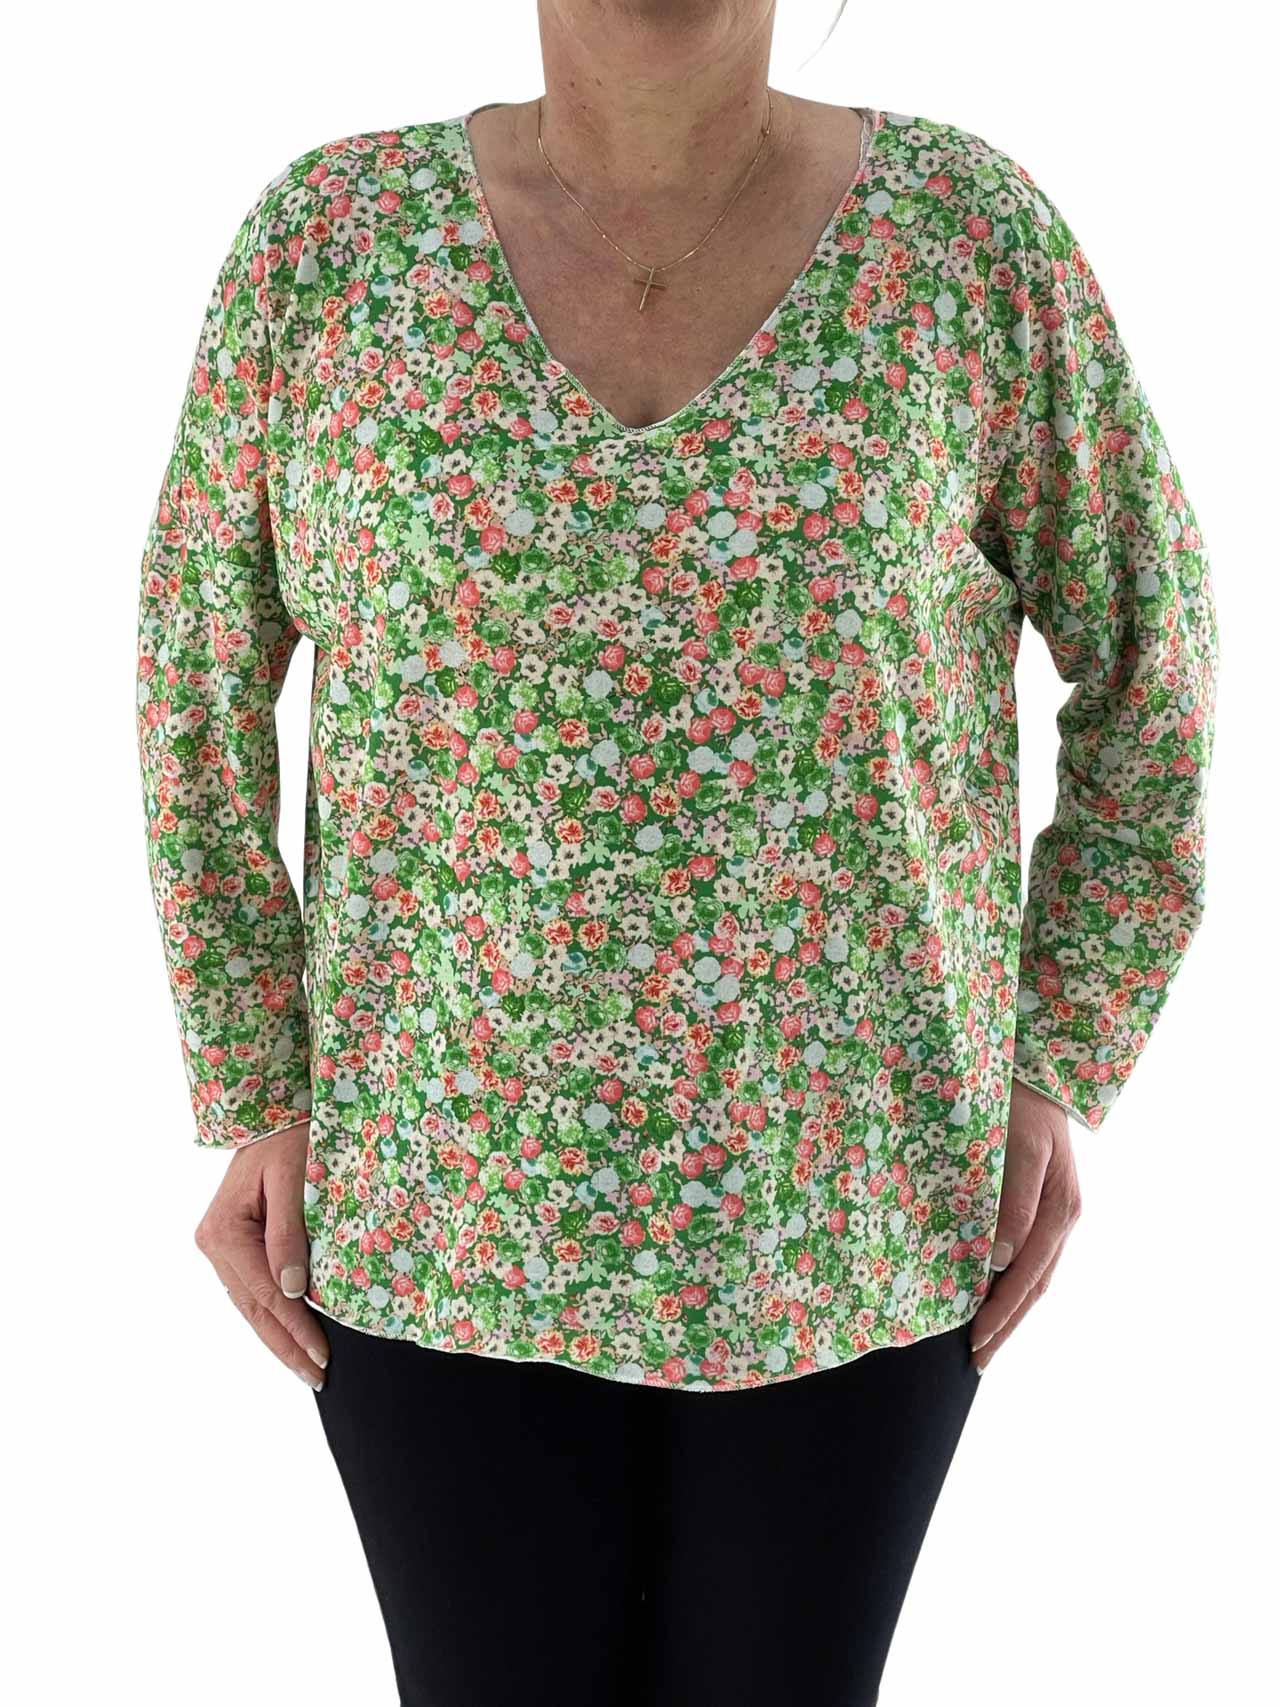 Blouse women's floral blouse code 17061